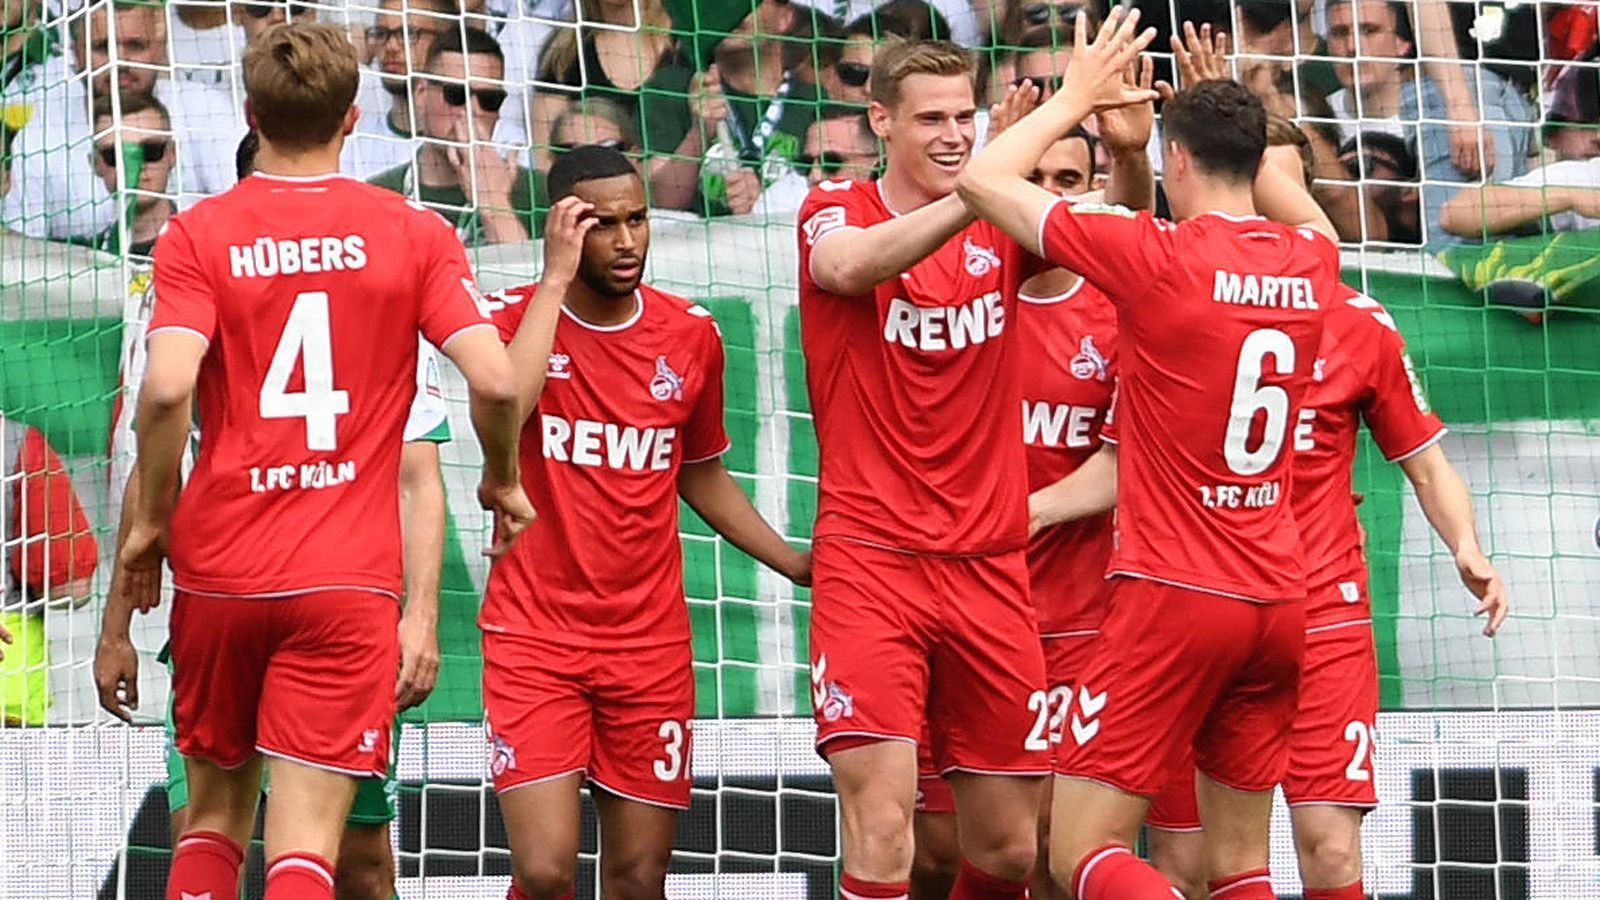 
                <strong>Die Motivation des 1. FC Köln</strong><br>
                Zwar haben Köln und Mainz sich längst aus dem Rennen um die Europa League verabschiedet. Beide Mannschaften könnten sich allerdings tabellarisch verbessern und somit für mehr TV-Einnahmen sorgen. Wenn Köln gegen Bayern gewinnt und Mainz in Dortmund verliert, der FC zudem im Torverhältnis vier Tore auf Mainz aufholt, rücken sie an Mainz vorbei und erobern Tabellenplatz 9. Gewinnen sie nicht, könnten sie noch vom rheinischen Rivalen Borussia Mönchengladbach eingeholt werden und auf Rang 11 zurückfallen. Das sollte Motivation genug sein.
              